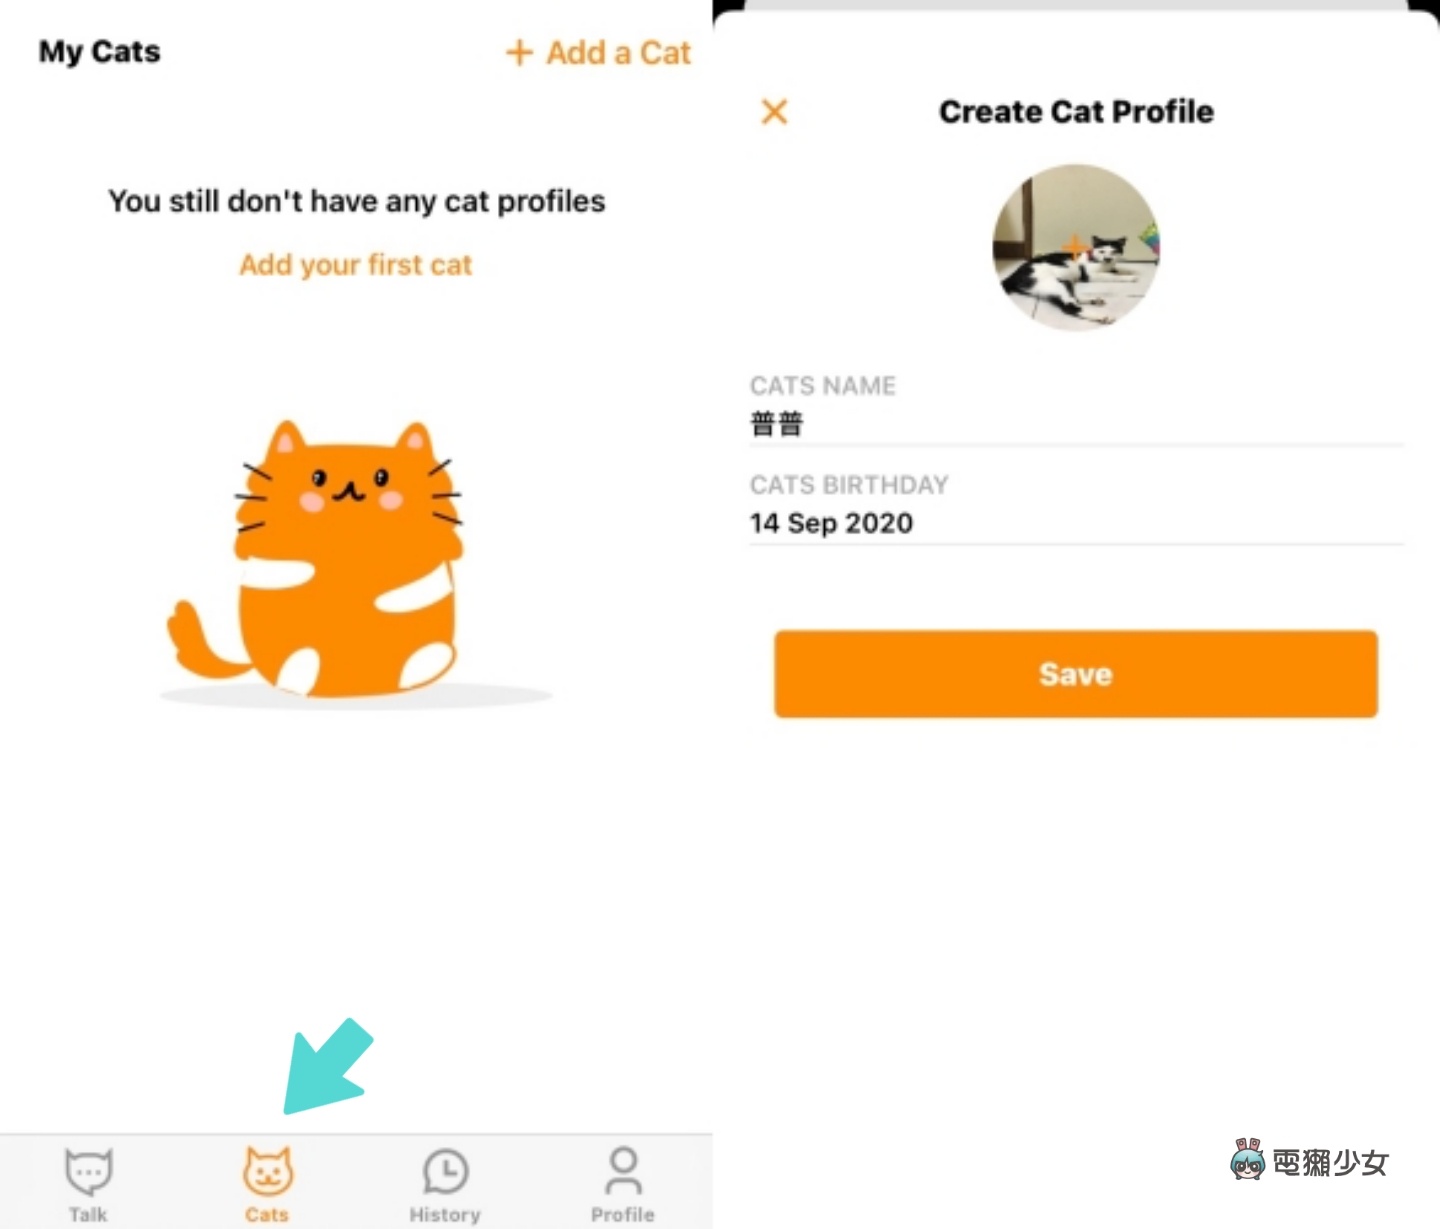 貓奴們看過來！喵語翻譯 App『 MeowTalk 』 讓你一秒聽懂喵皇聖旨 Android / iOS